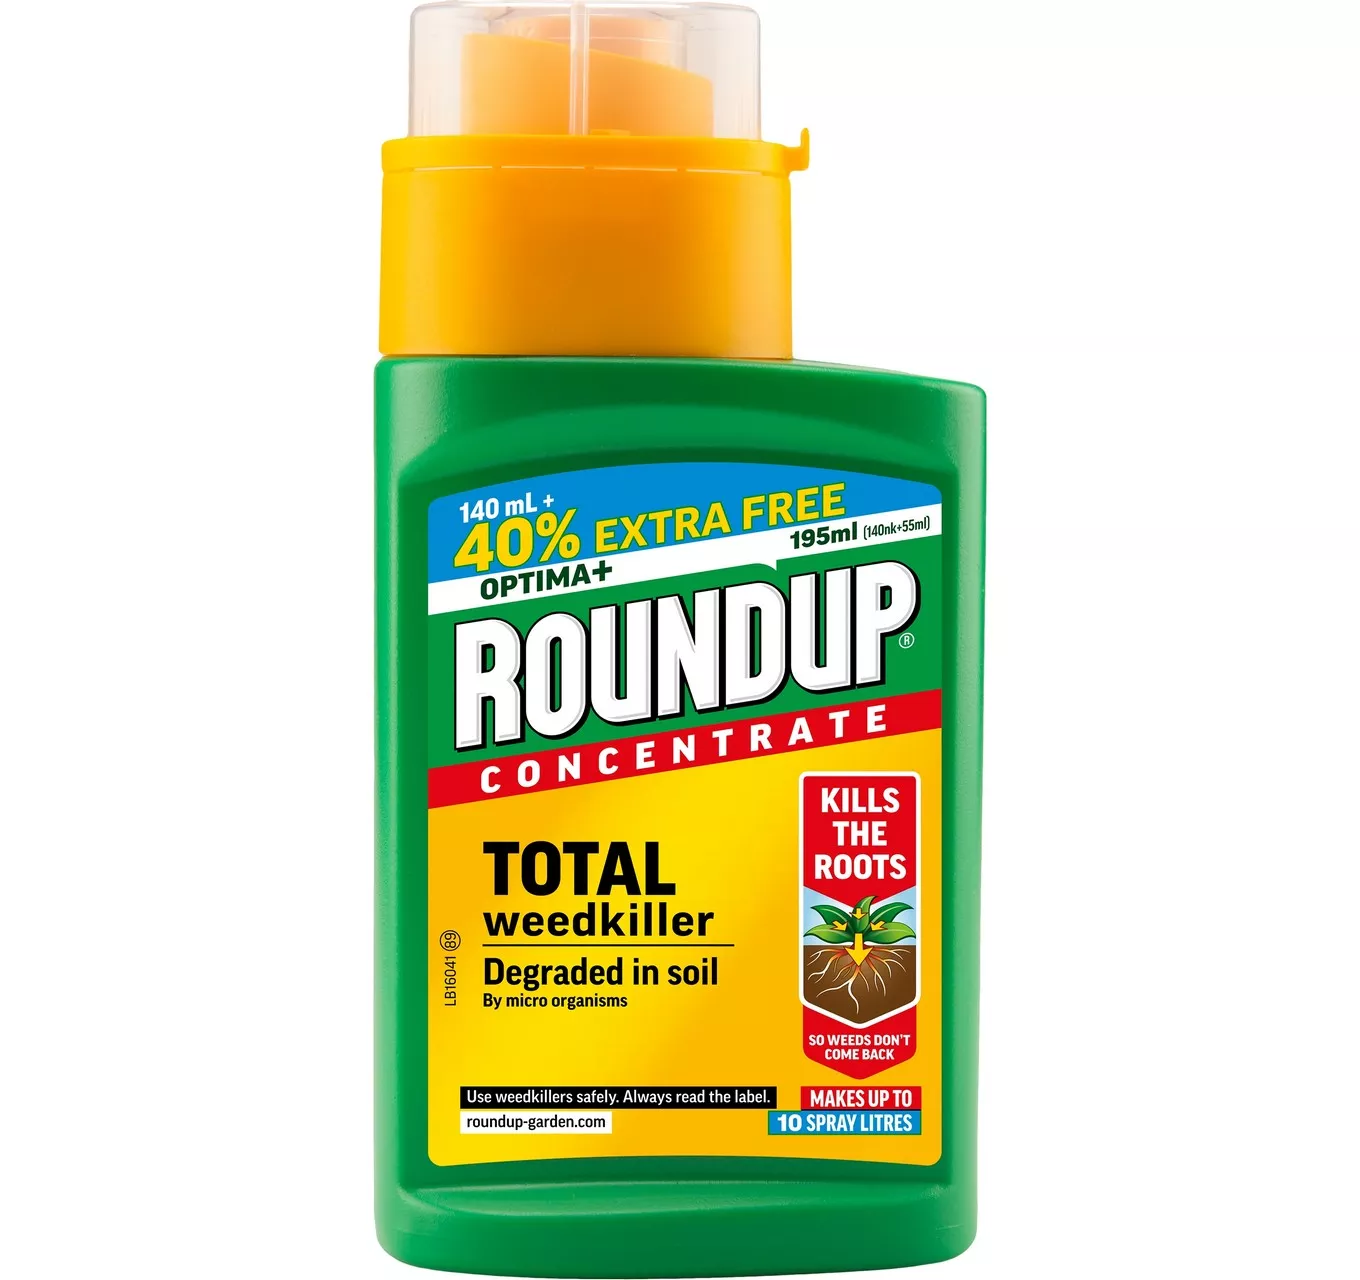 Roundup Optima+ 140ml + 40%